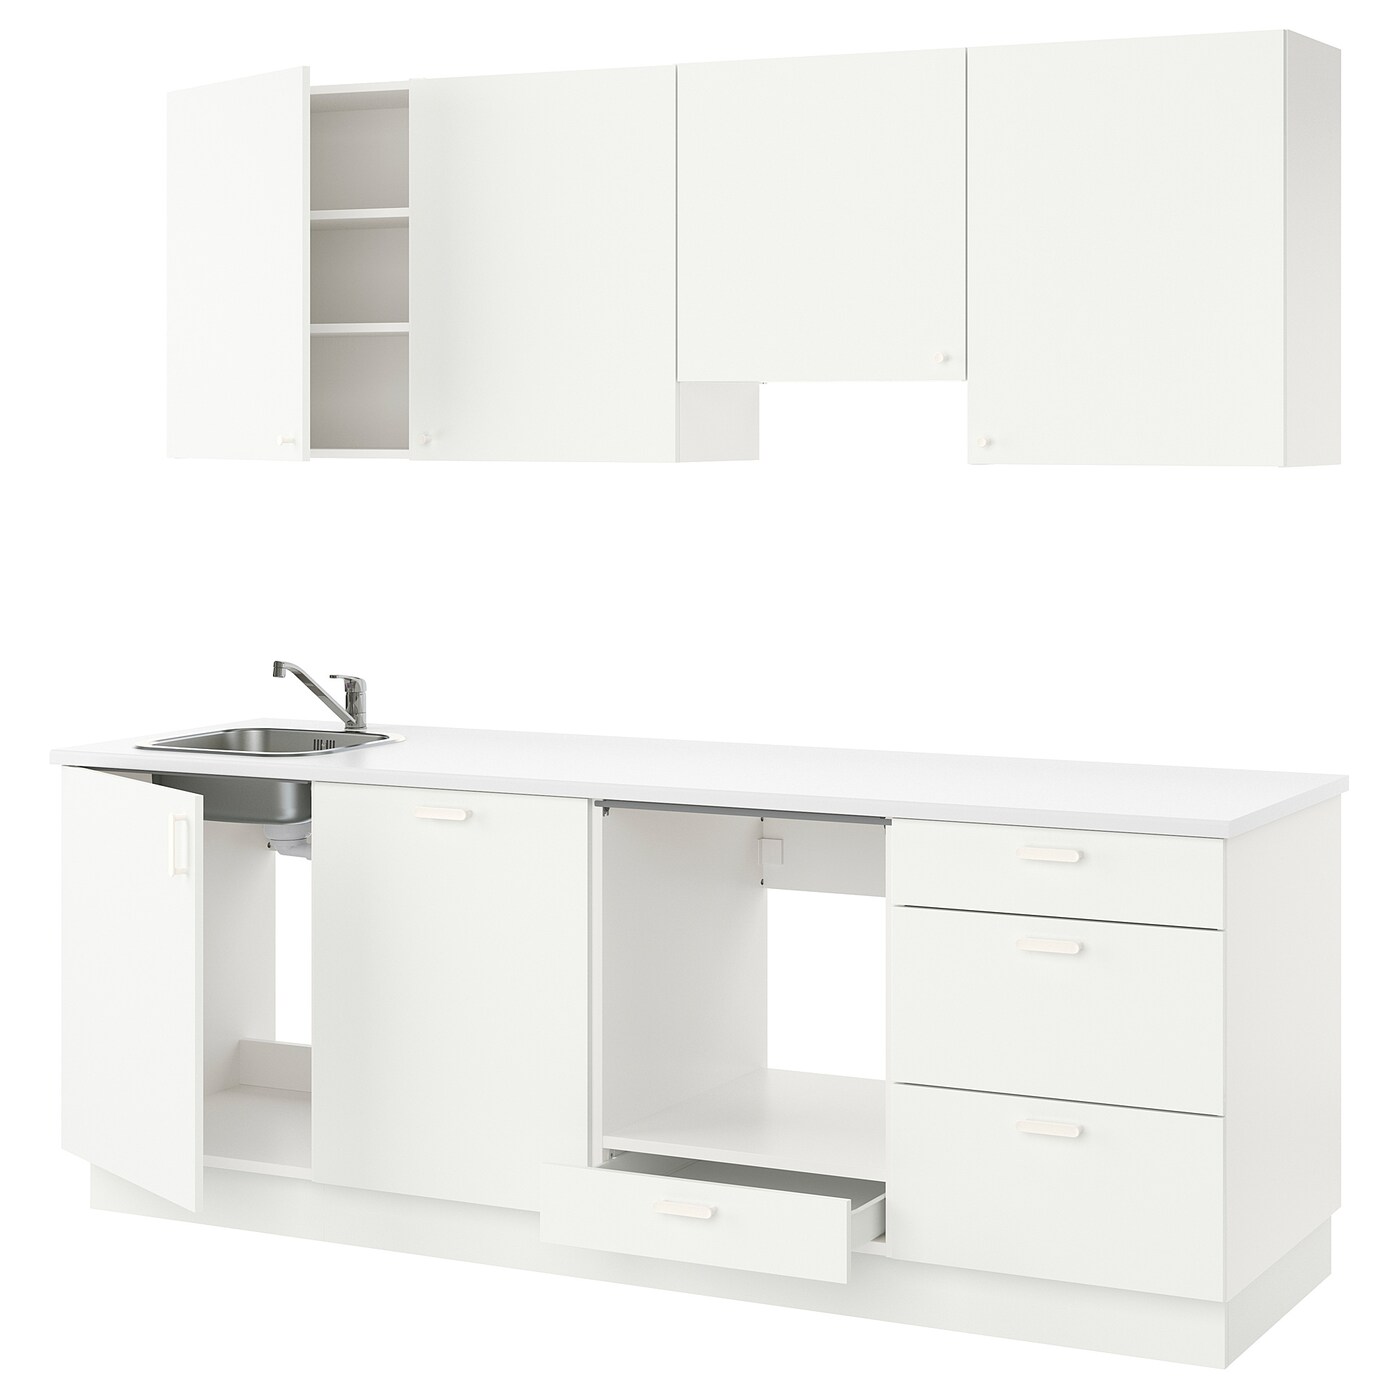 Кухня - ENHET  IKEA/ ЭНХЕТ ИКЕА, 243х222 см, белый